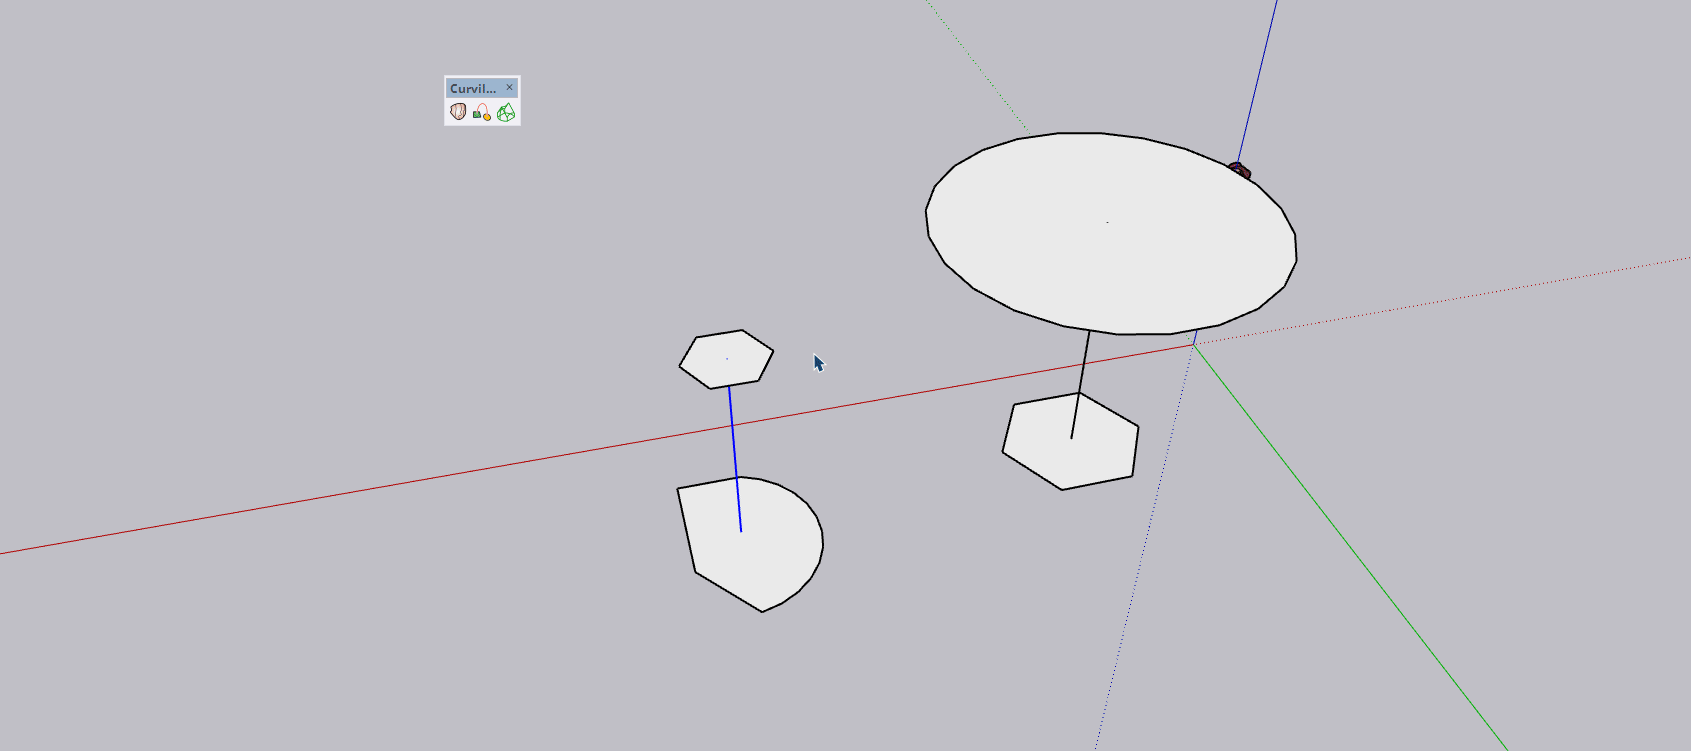  [ SKETCHUP généralité ] Interpolation progressive entre deux formes le long d'un tracé SketchUp_dfpRQ30ZJg